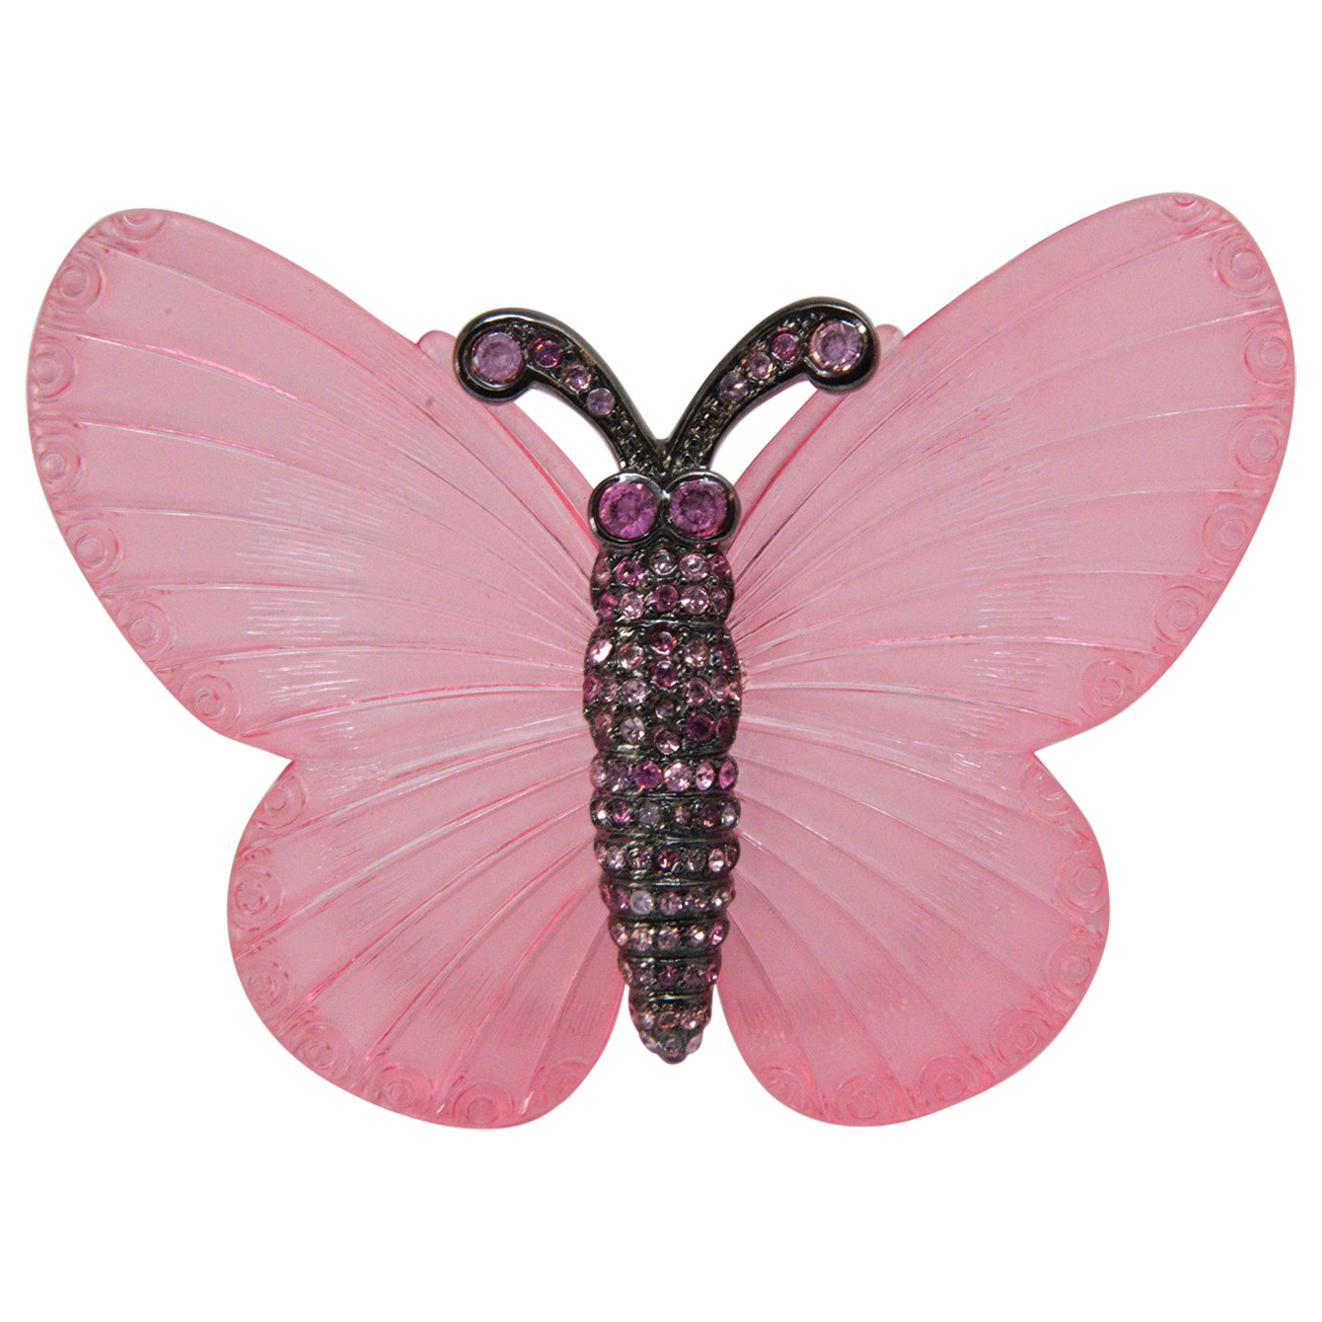 Signed Vintage Kenneth J. Lane Pink Butterfly Brooch For Sale